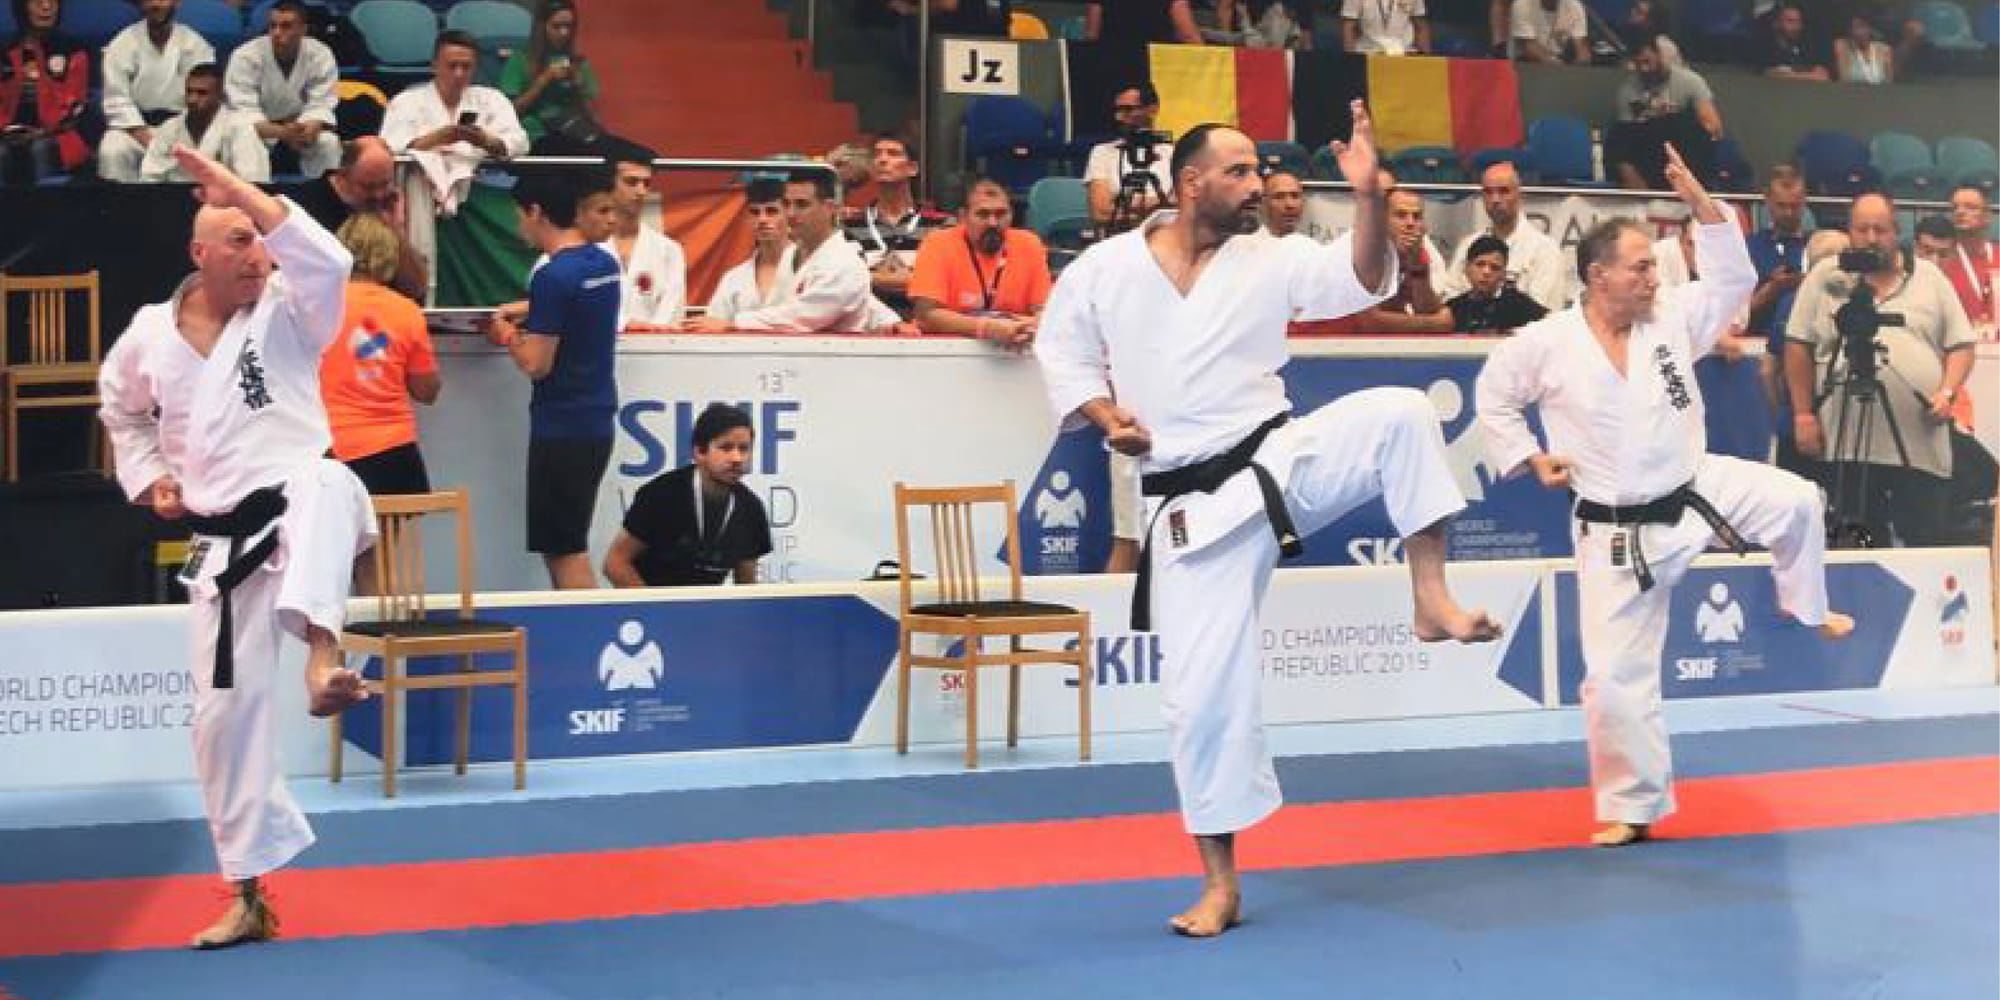 Jewish-Arab Israeli karate team win 8th place in world championship